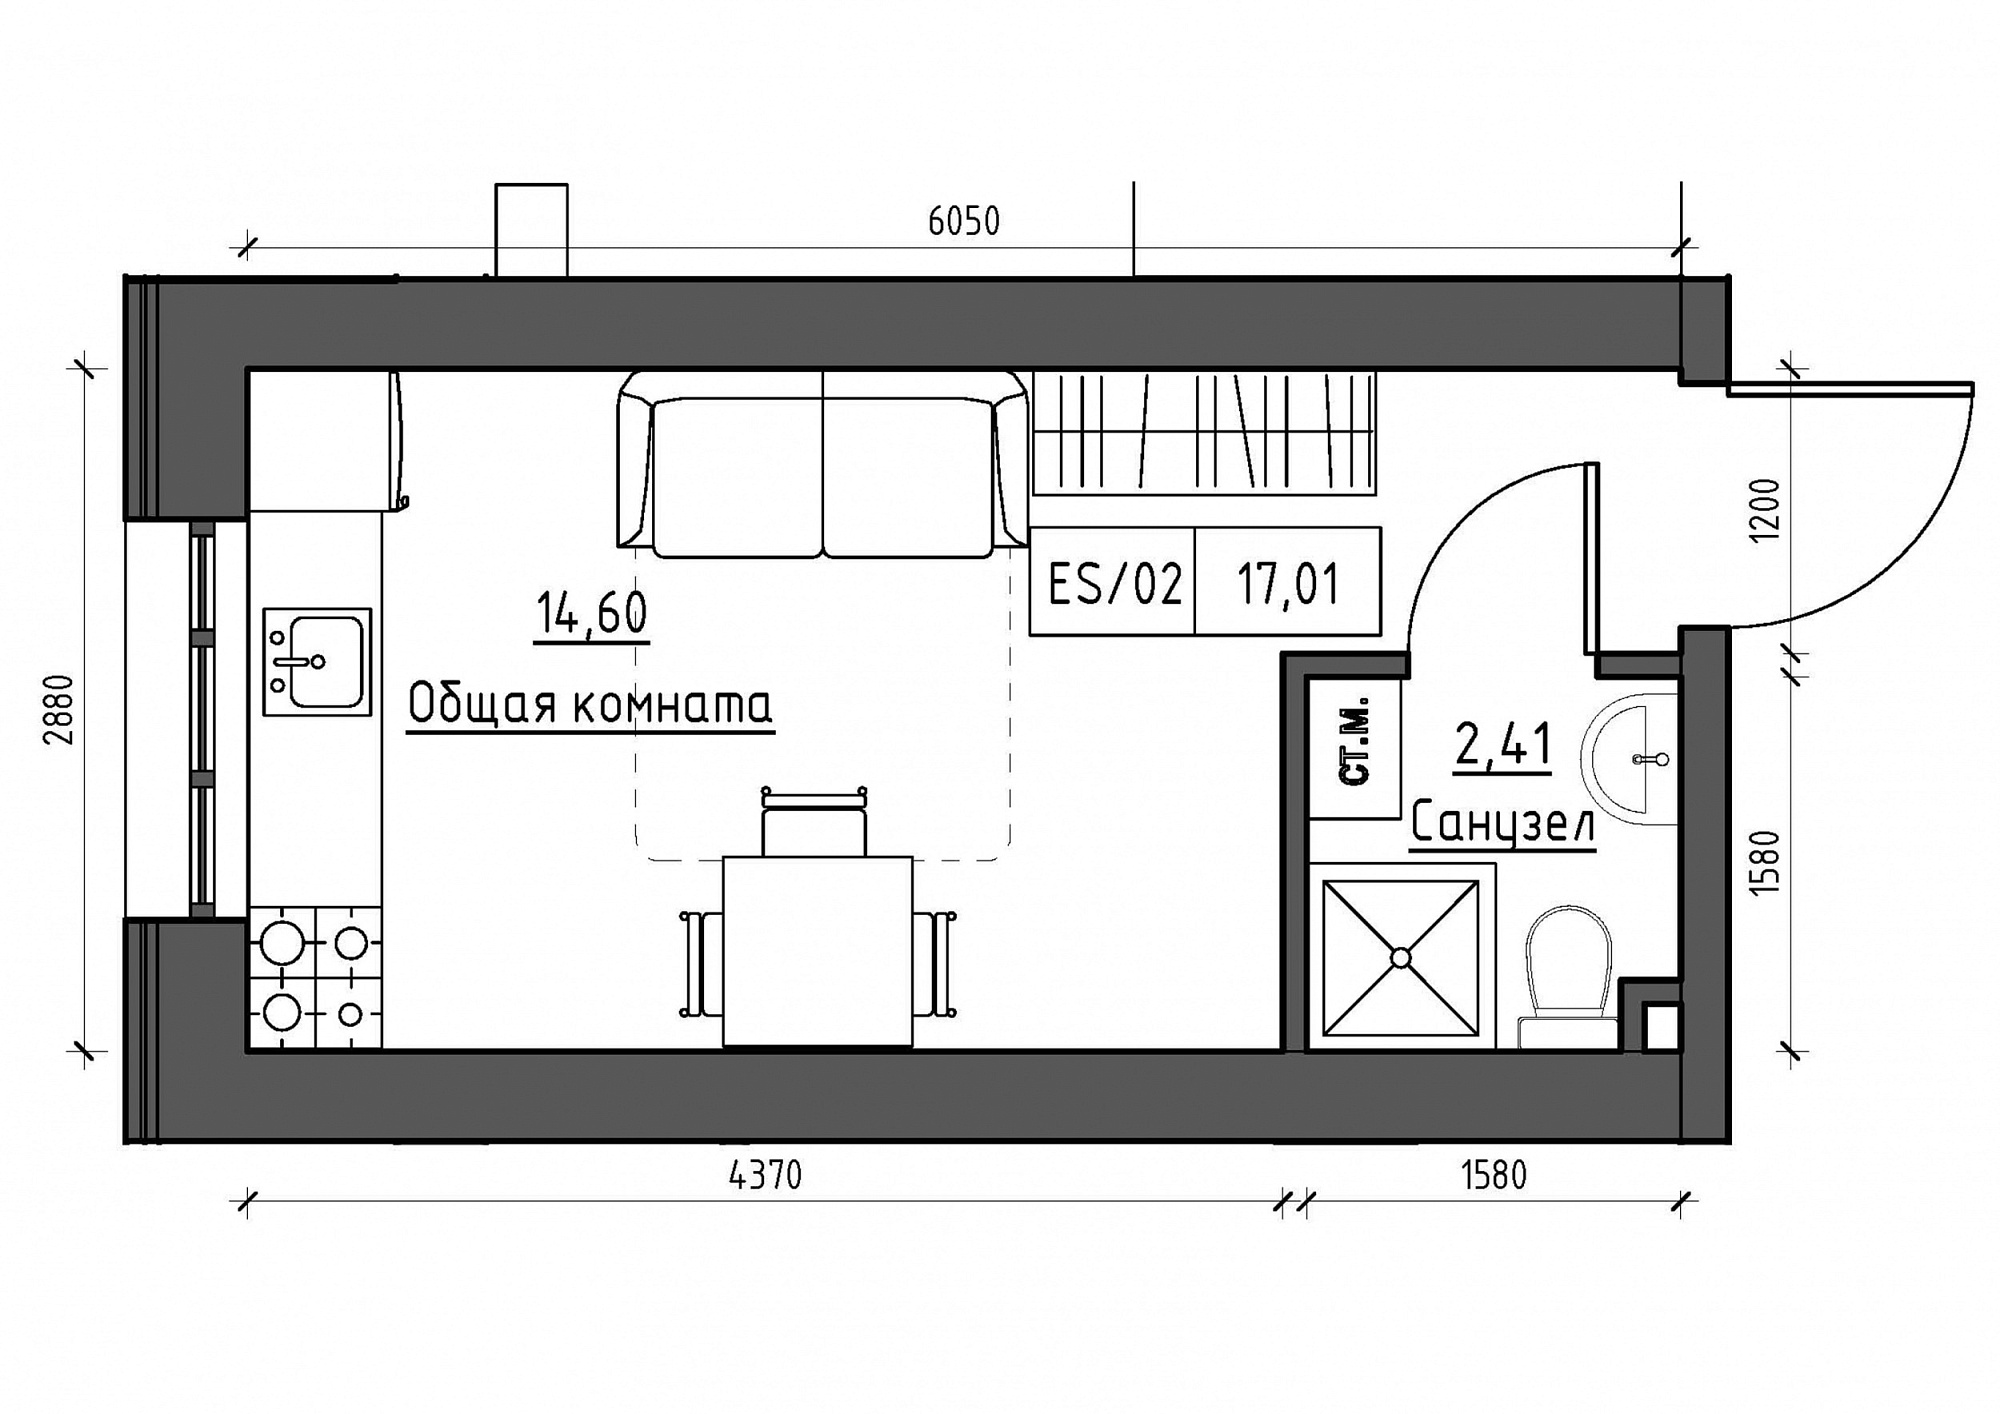 Планування Smart-квартира площею 17.02м2, KS-011-03/0002.